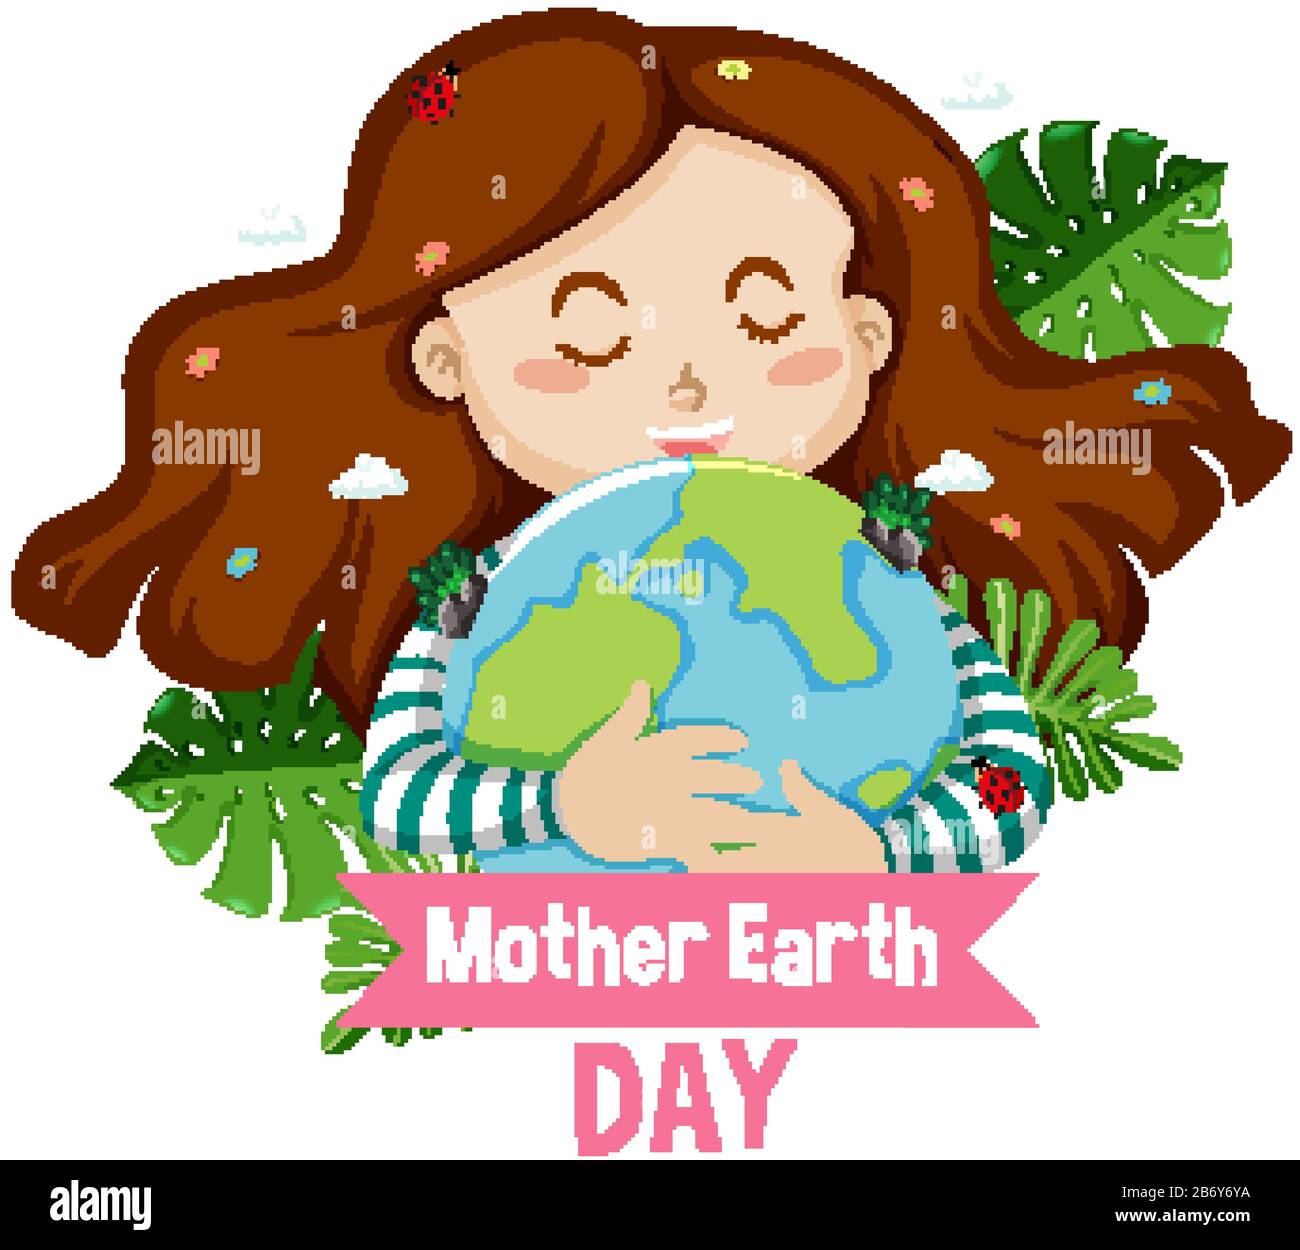 Motif poster pour la fête de la mère de la terre avec Happy girl dans l'illustration de fond Illustration de Vecteur